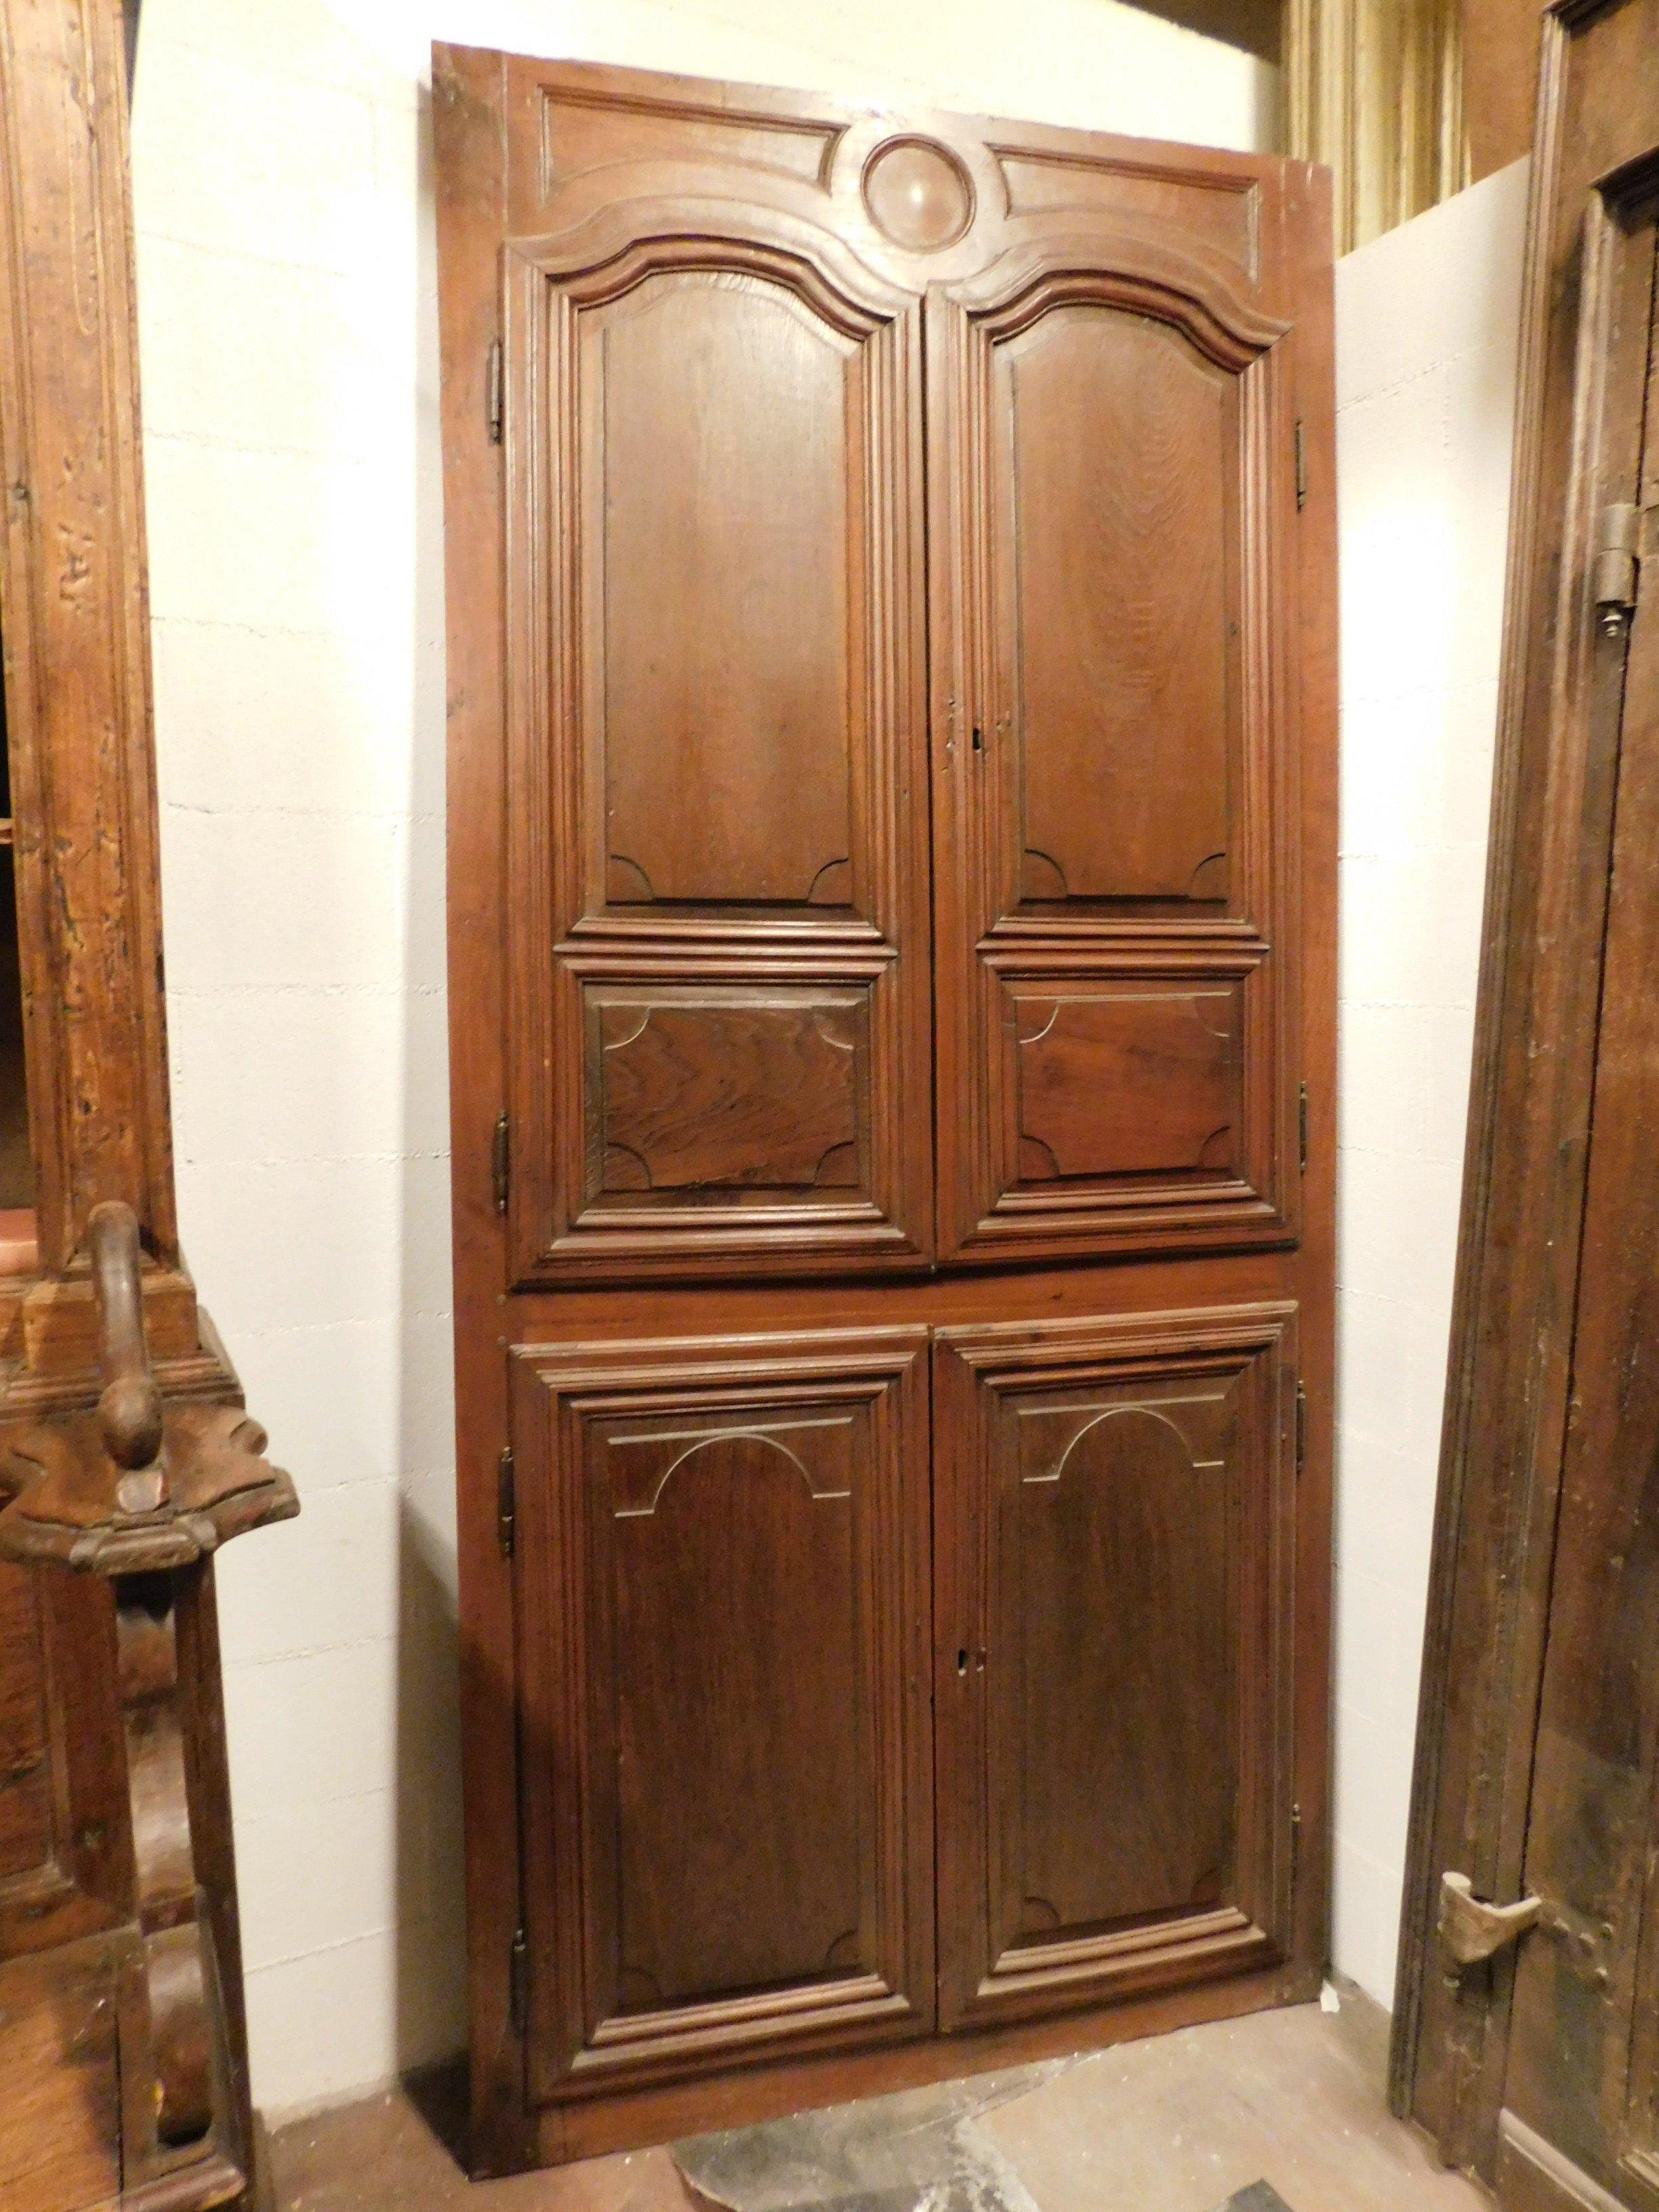 Antiker Wandschrank, Tür, Einbauschrank, Nussbaum-Plakat mit fein geschnitzten Türen, unterteilt in vier Türen, gebaut im 18. Jahrhundert, für Haus in Italien.
Ideal für die Herstellung von Schränken, Möbel in der Wand, einziehbar, stilvoll und in